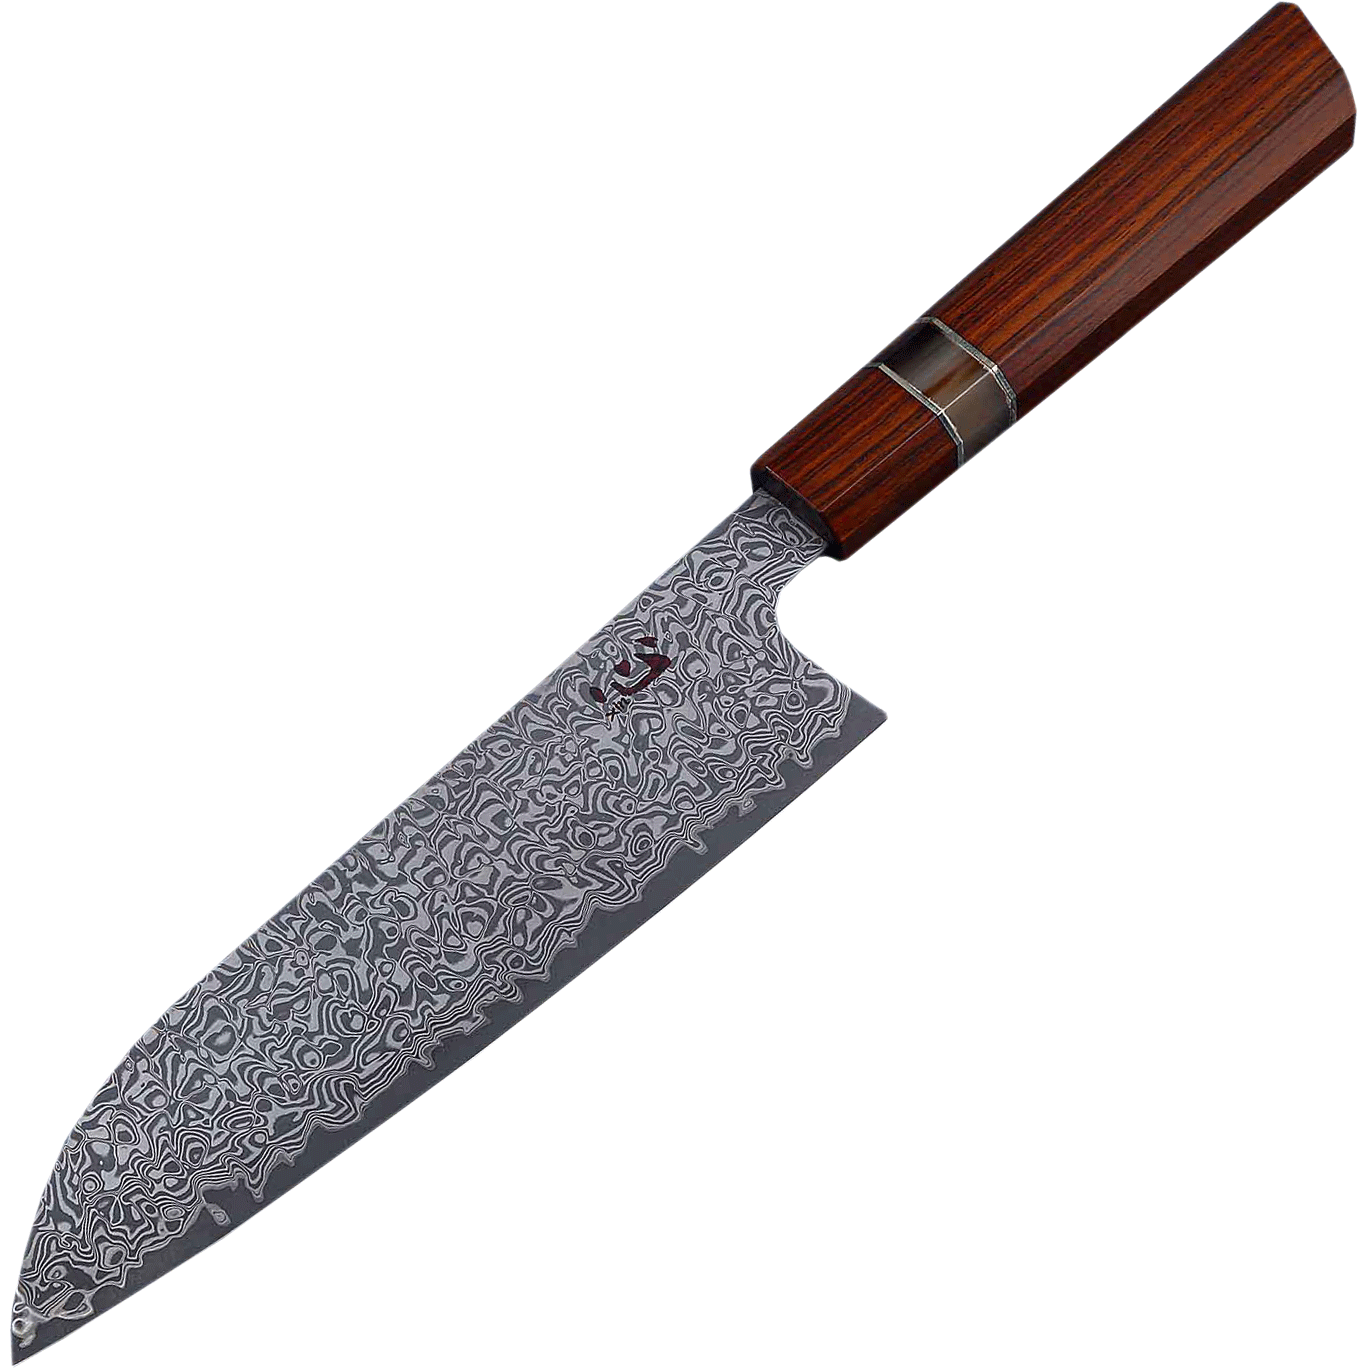 Нож кухонный Xin Cutlery Santoku XC123 193мм, сталь VG-10, рукоять дерево палисандр - фото 1